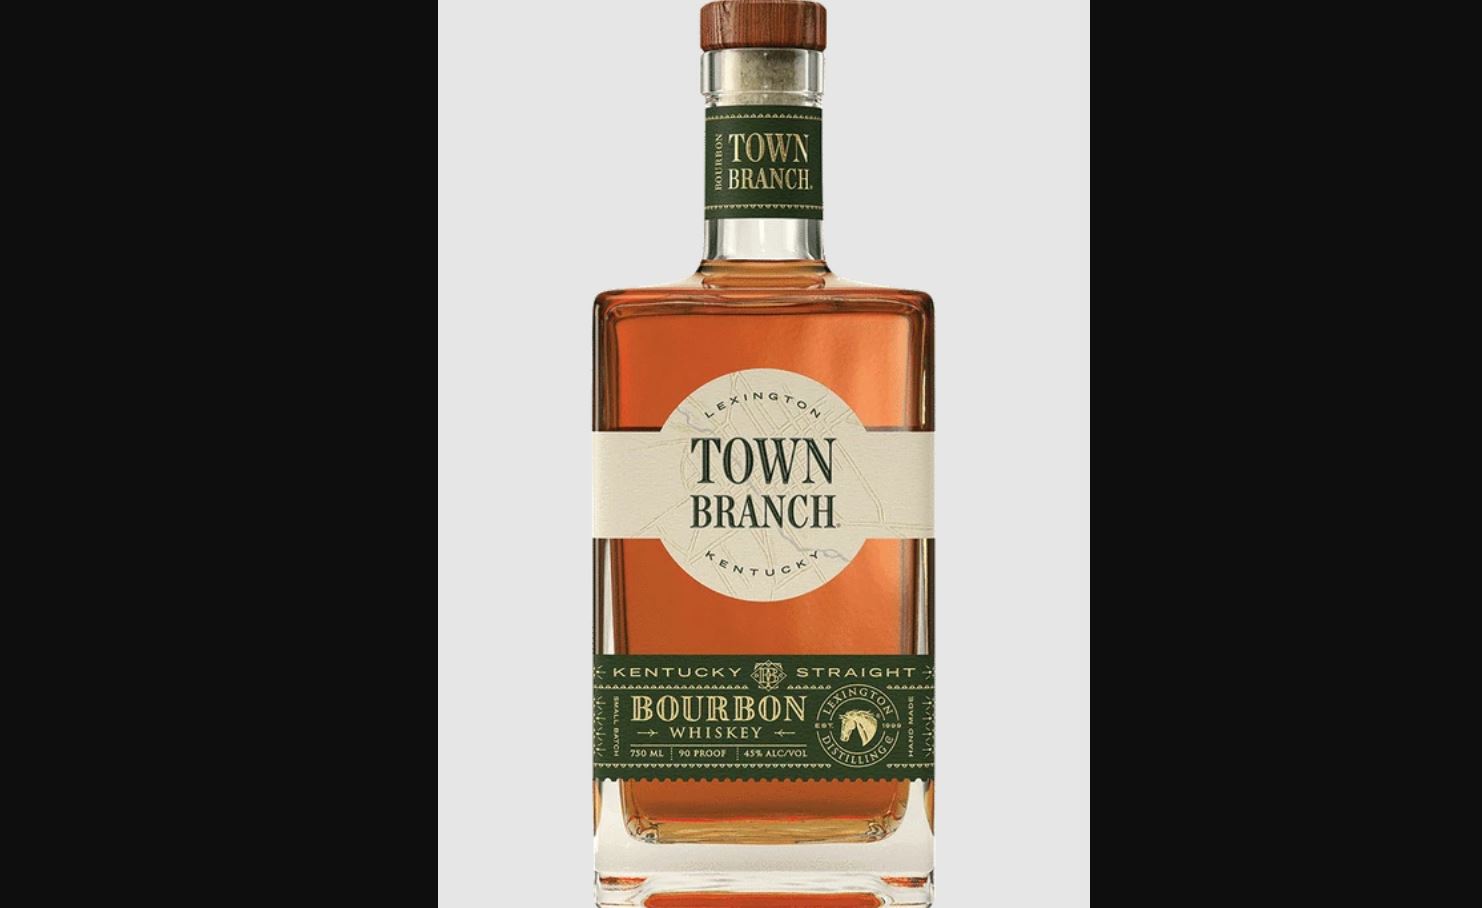 Town Branch Kentucky Straight Bourbon Bottle